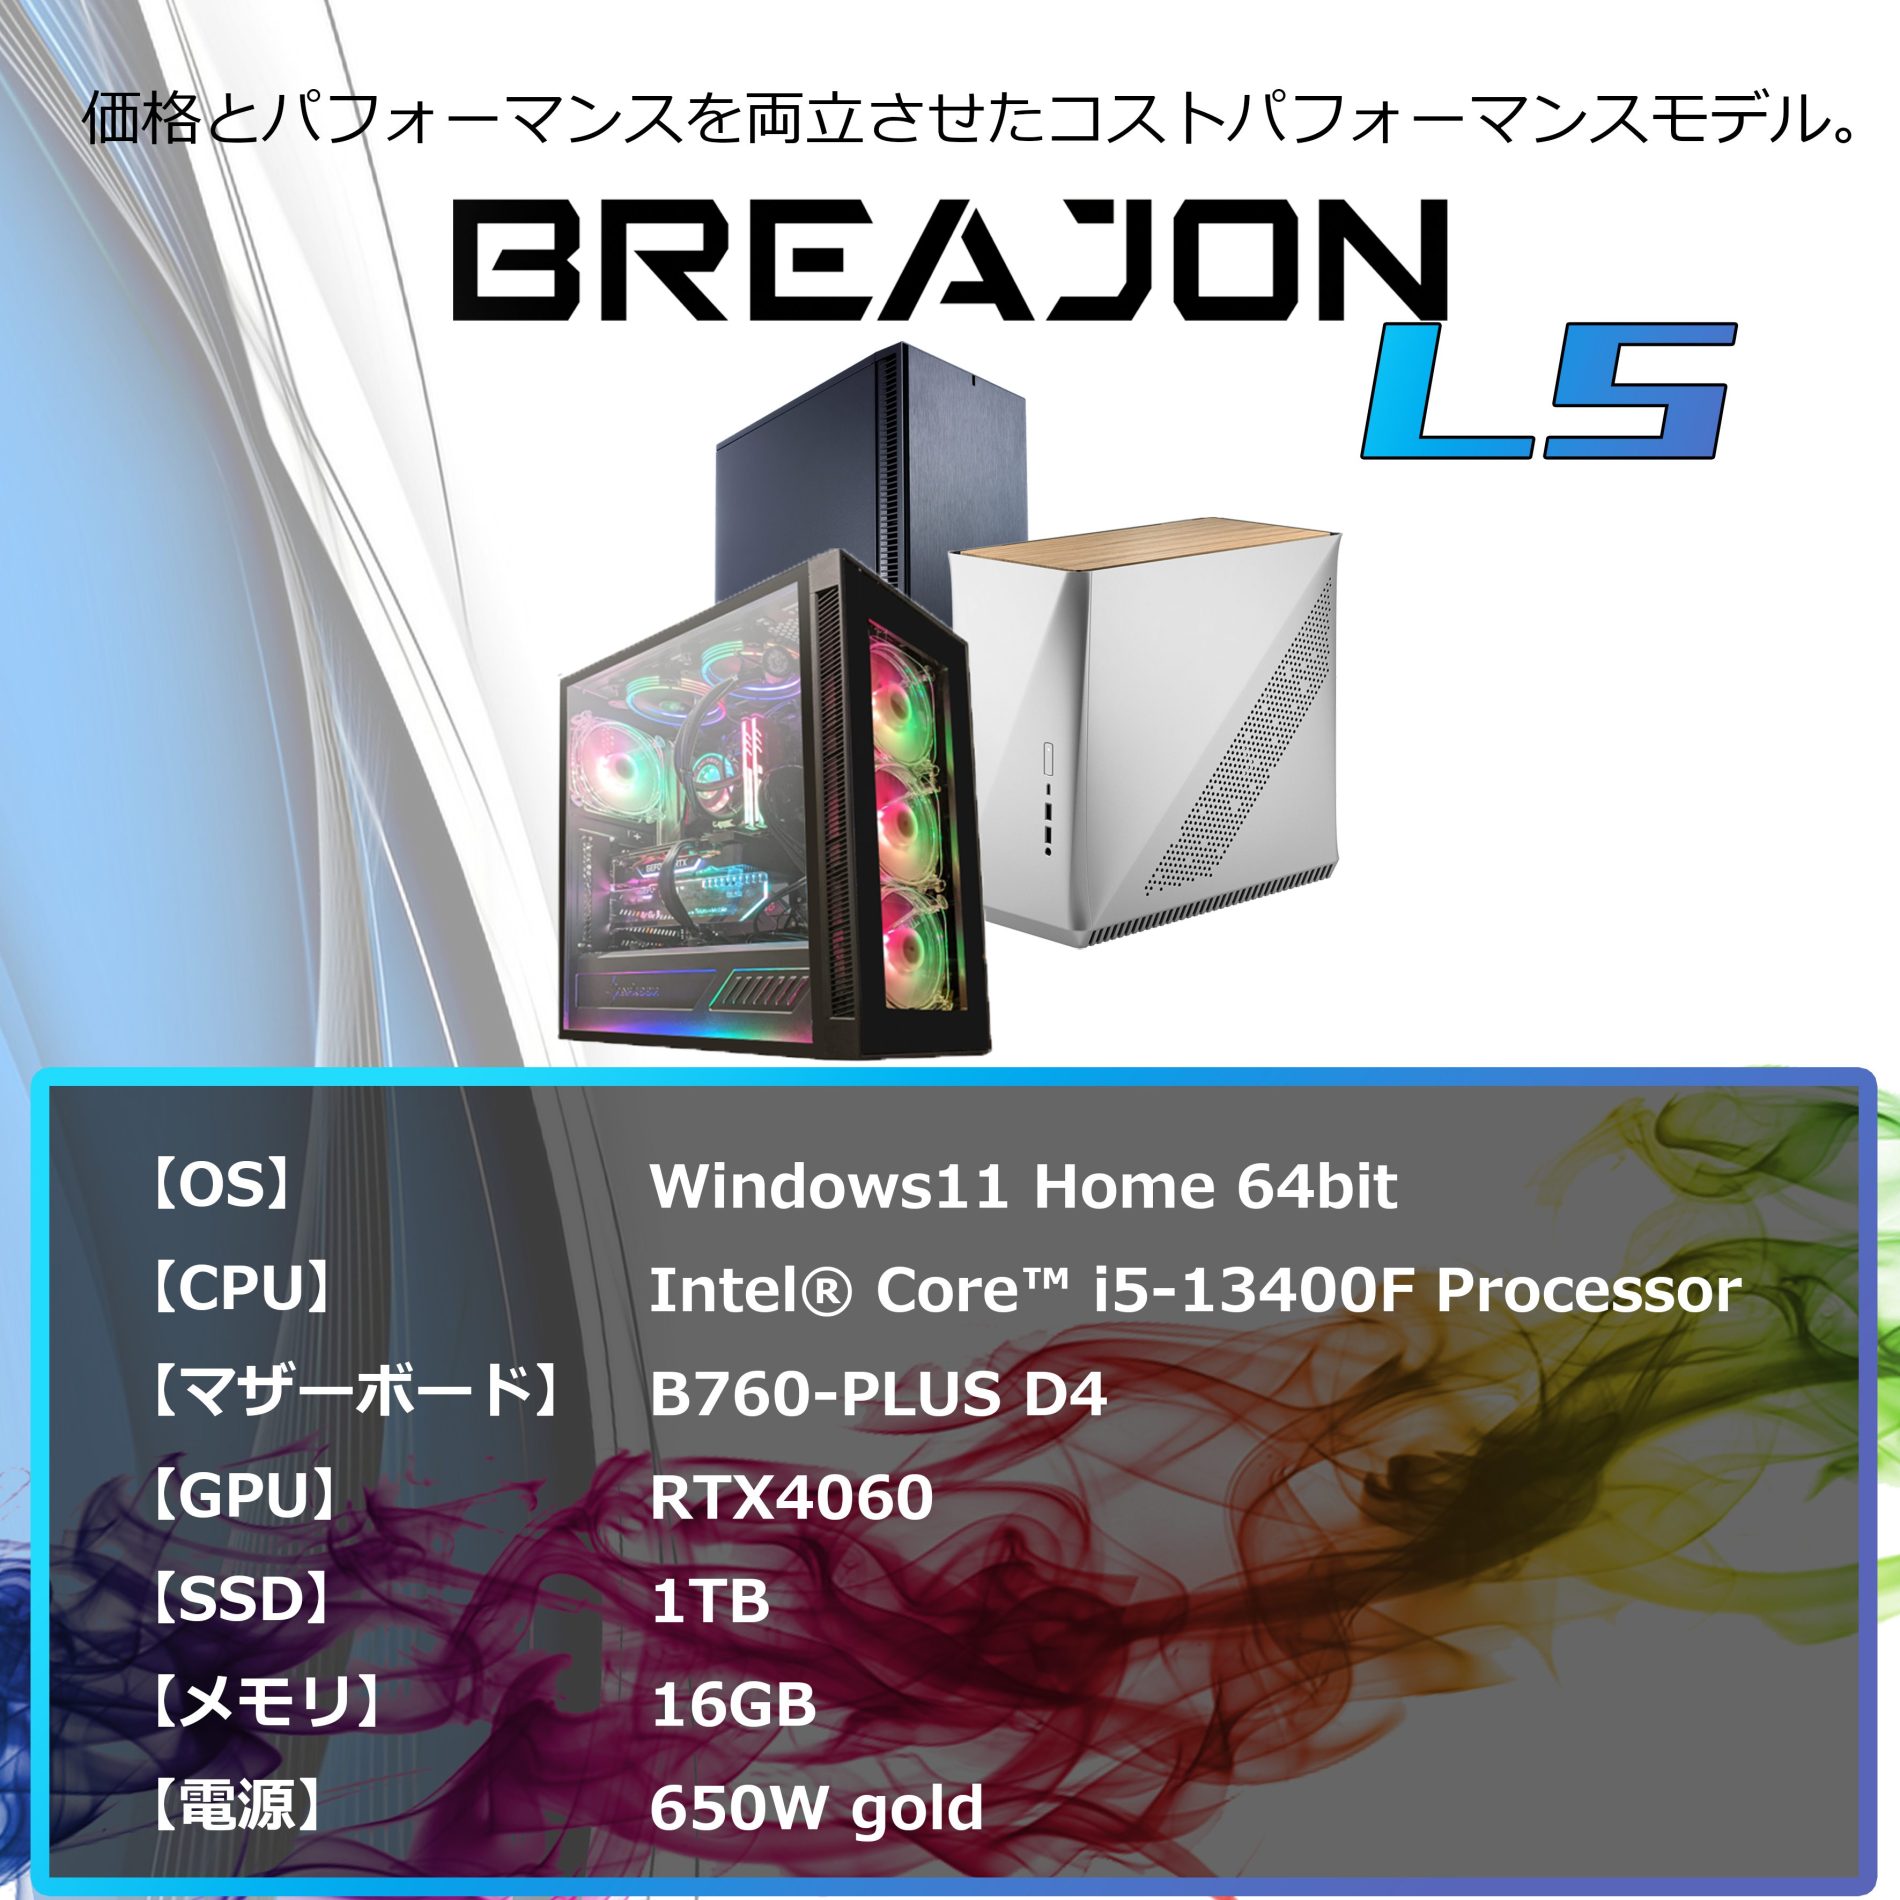 BREAJON LS｜最新ゲームにも十分対応可能な性能を持ちながらも、低価格に抑えたモデル。<br>一部のゲームを除けば、最高画質設定でも十分プレイ可能です。